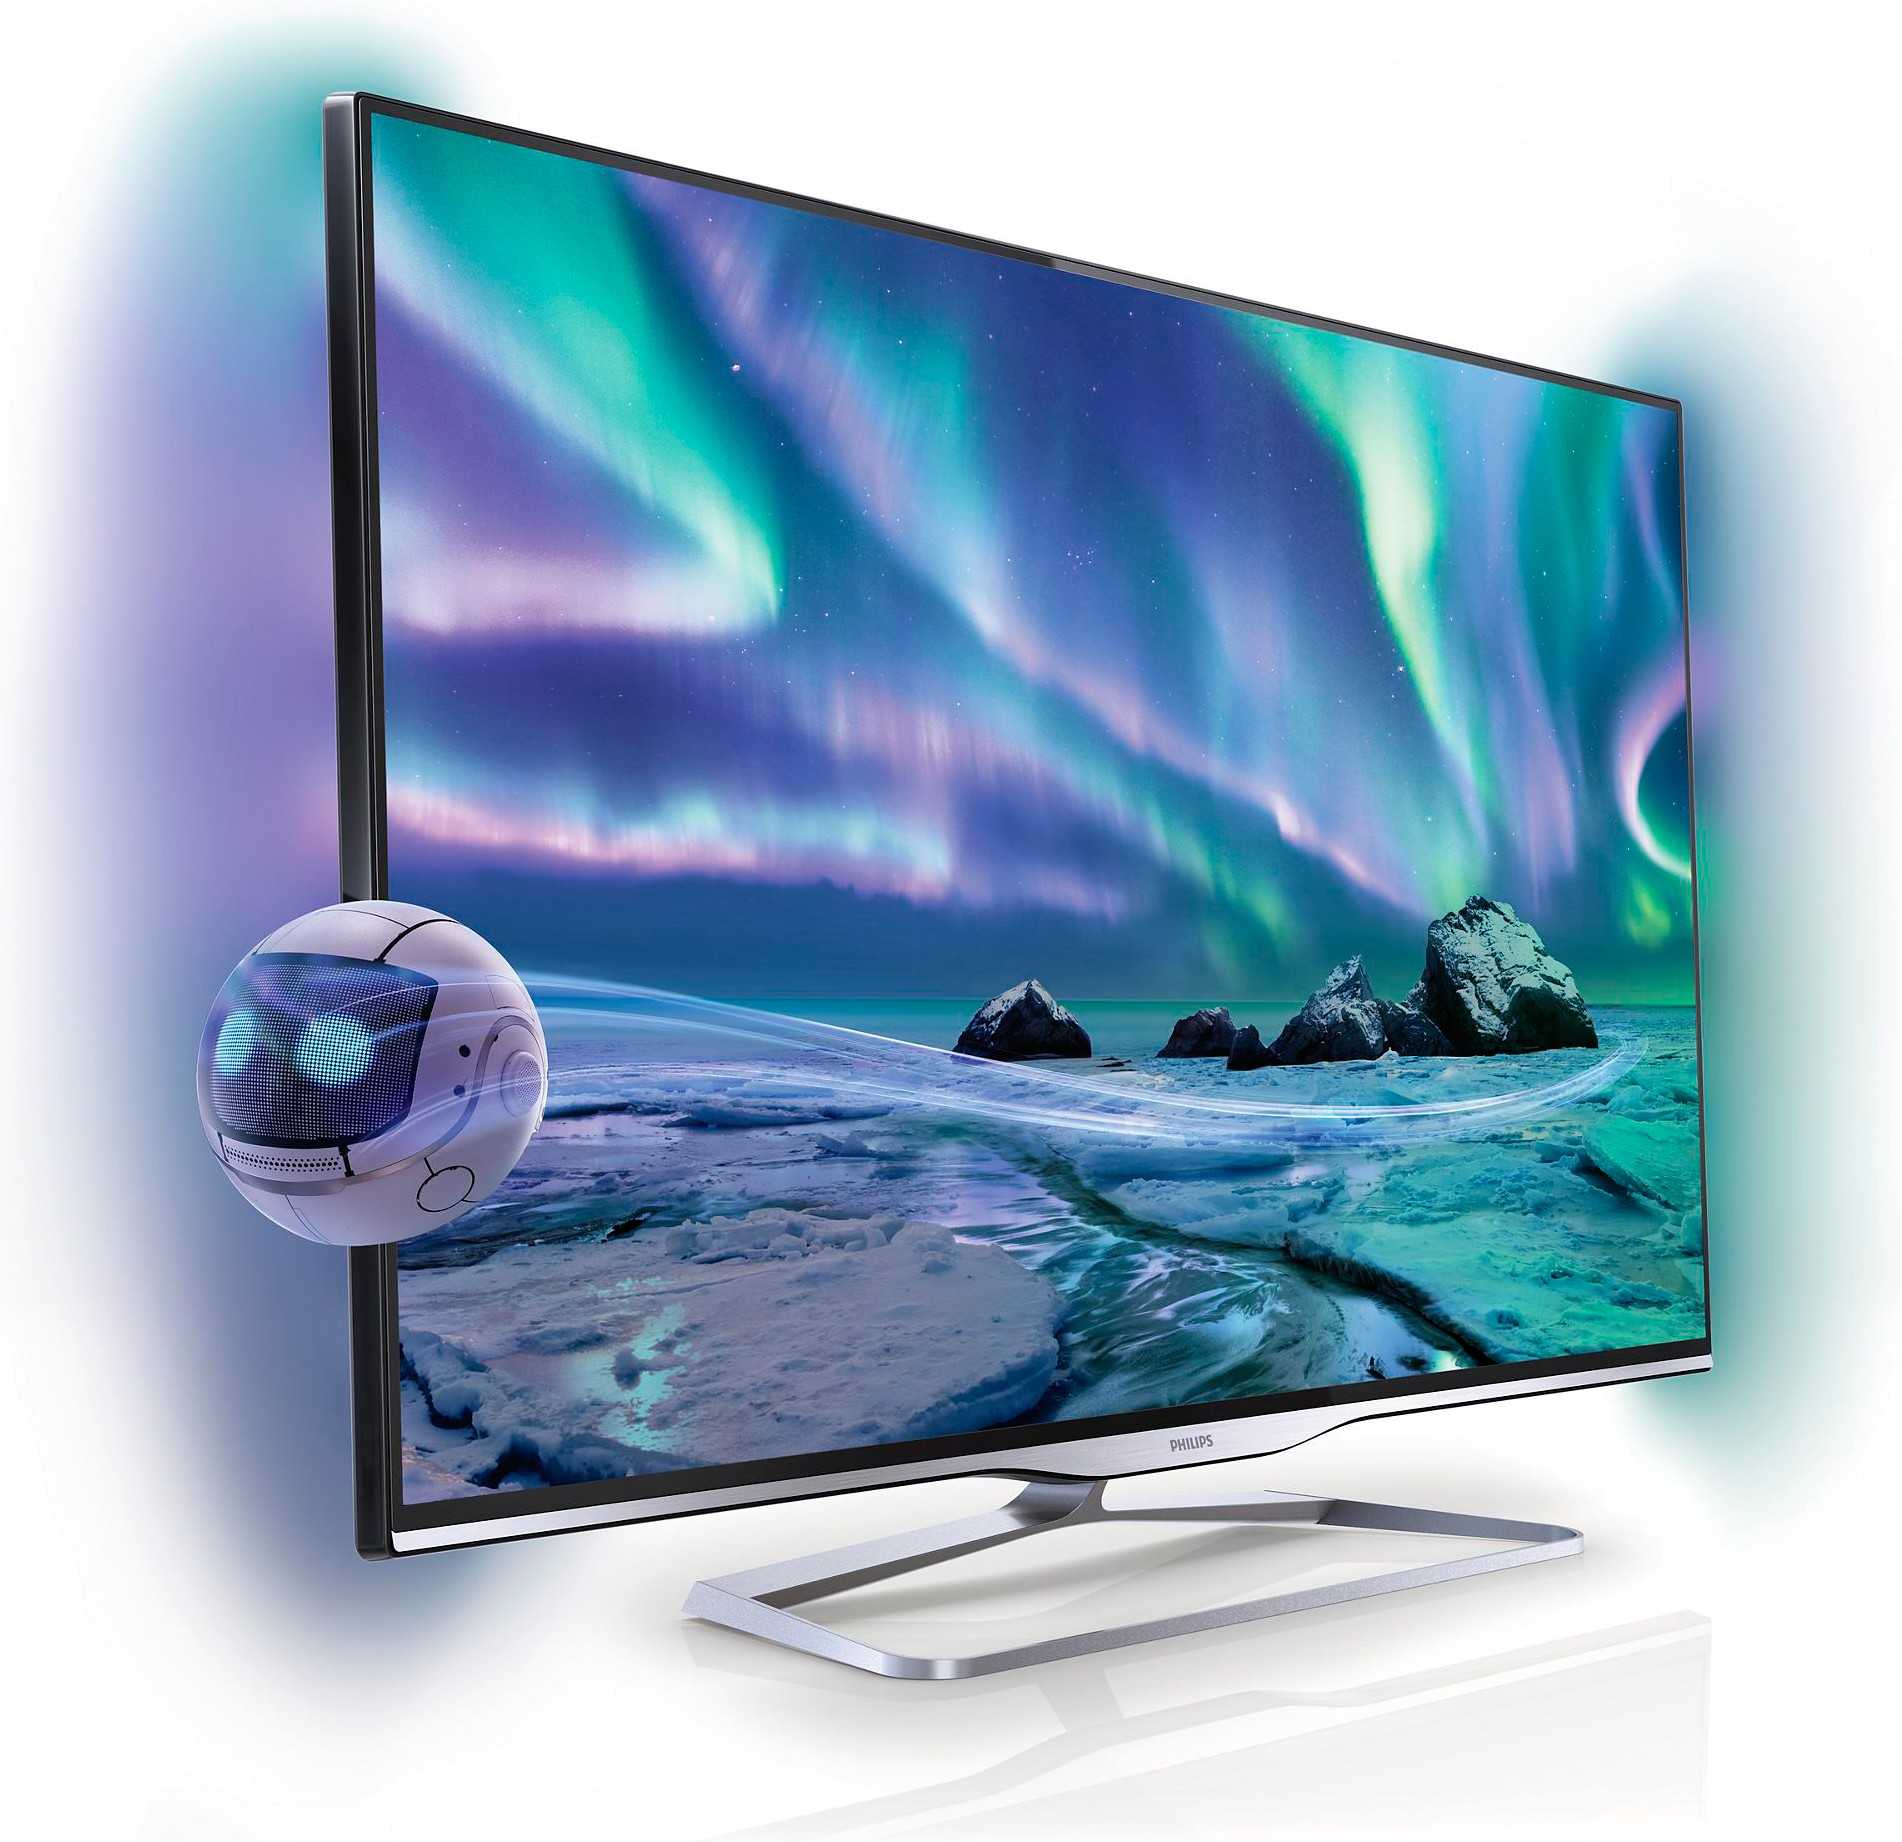 Телевизор philips 42pfl5008t - купить | цены | обзоры и тесты | отзывы | параметры и характеристики | инструкция